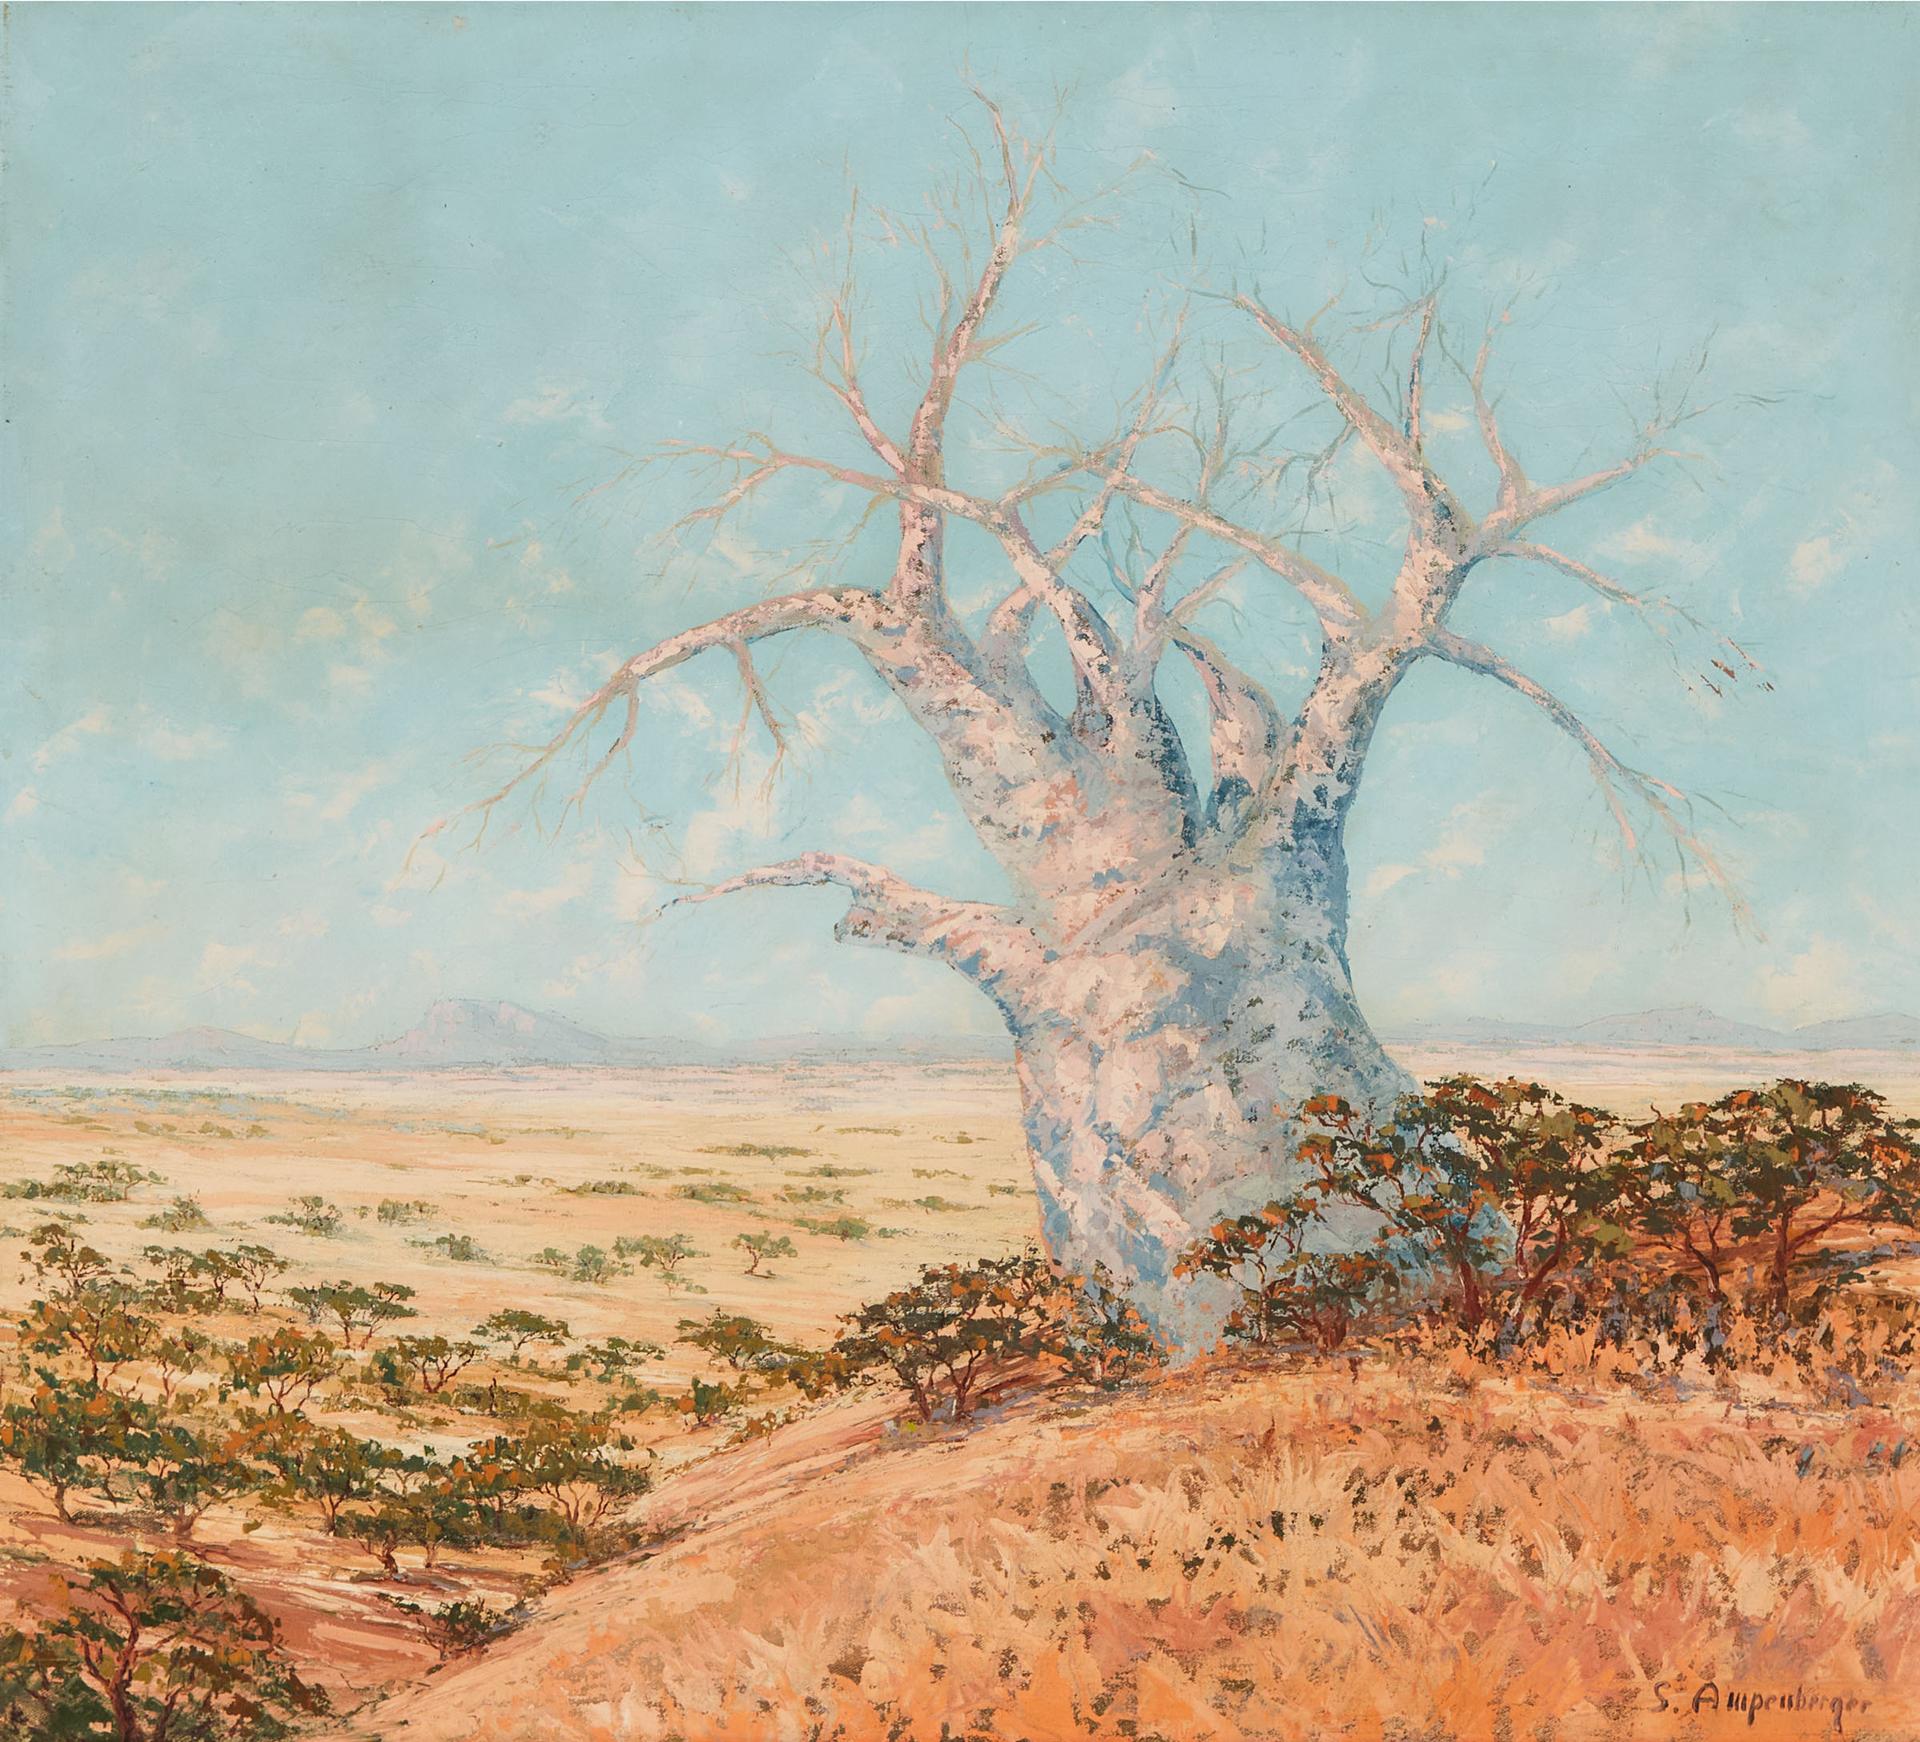 Stefan Ampenberger (1908-1983) - Bare Tree In Landscape